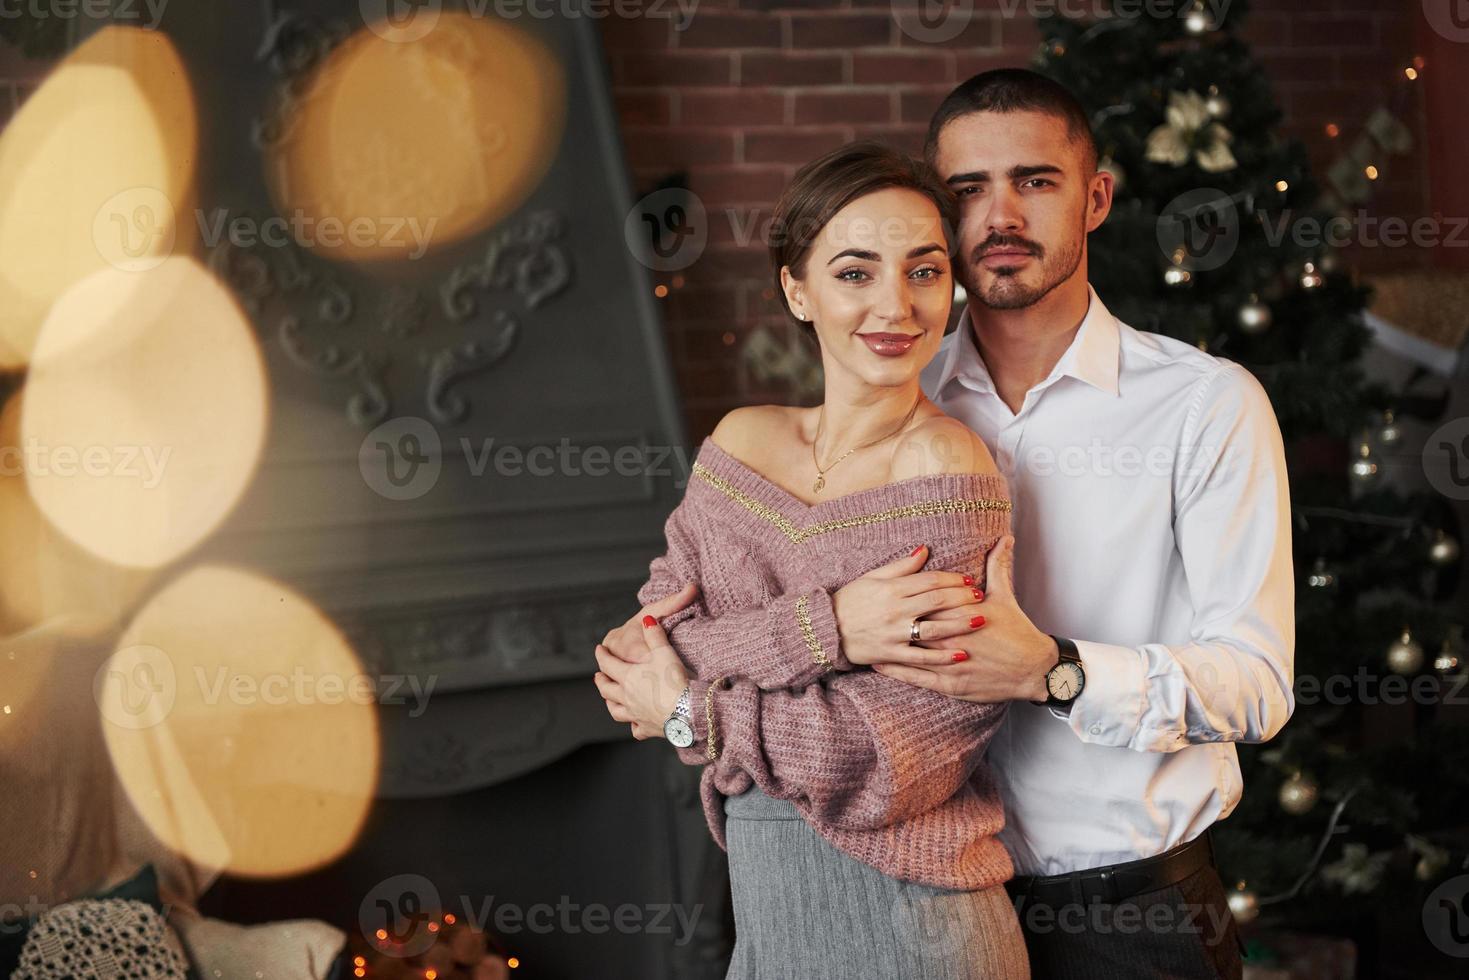 amantes doces e elegantes. casal legal comemorando ano novo na frente da árvore de natal foto